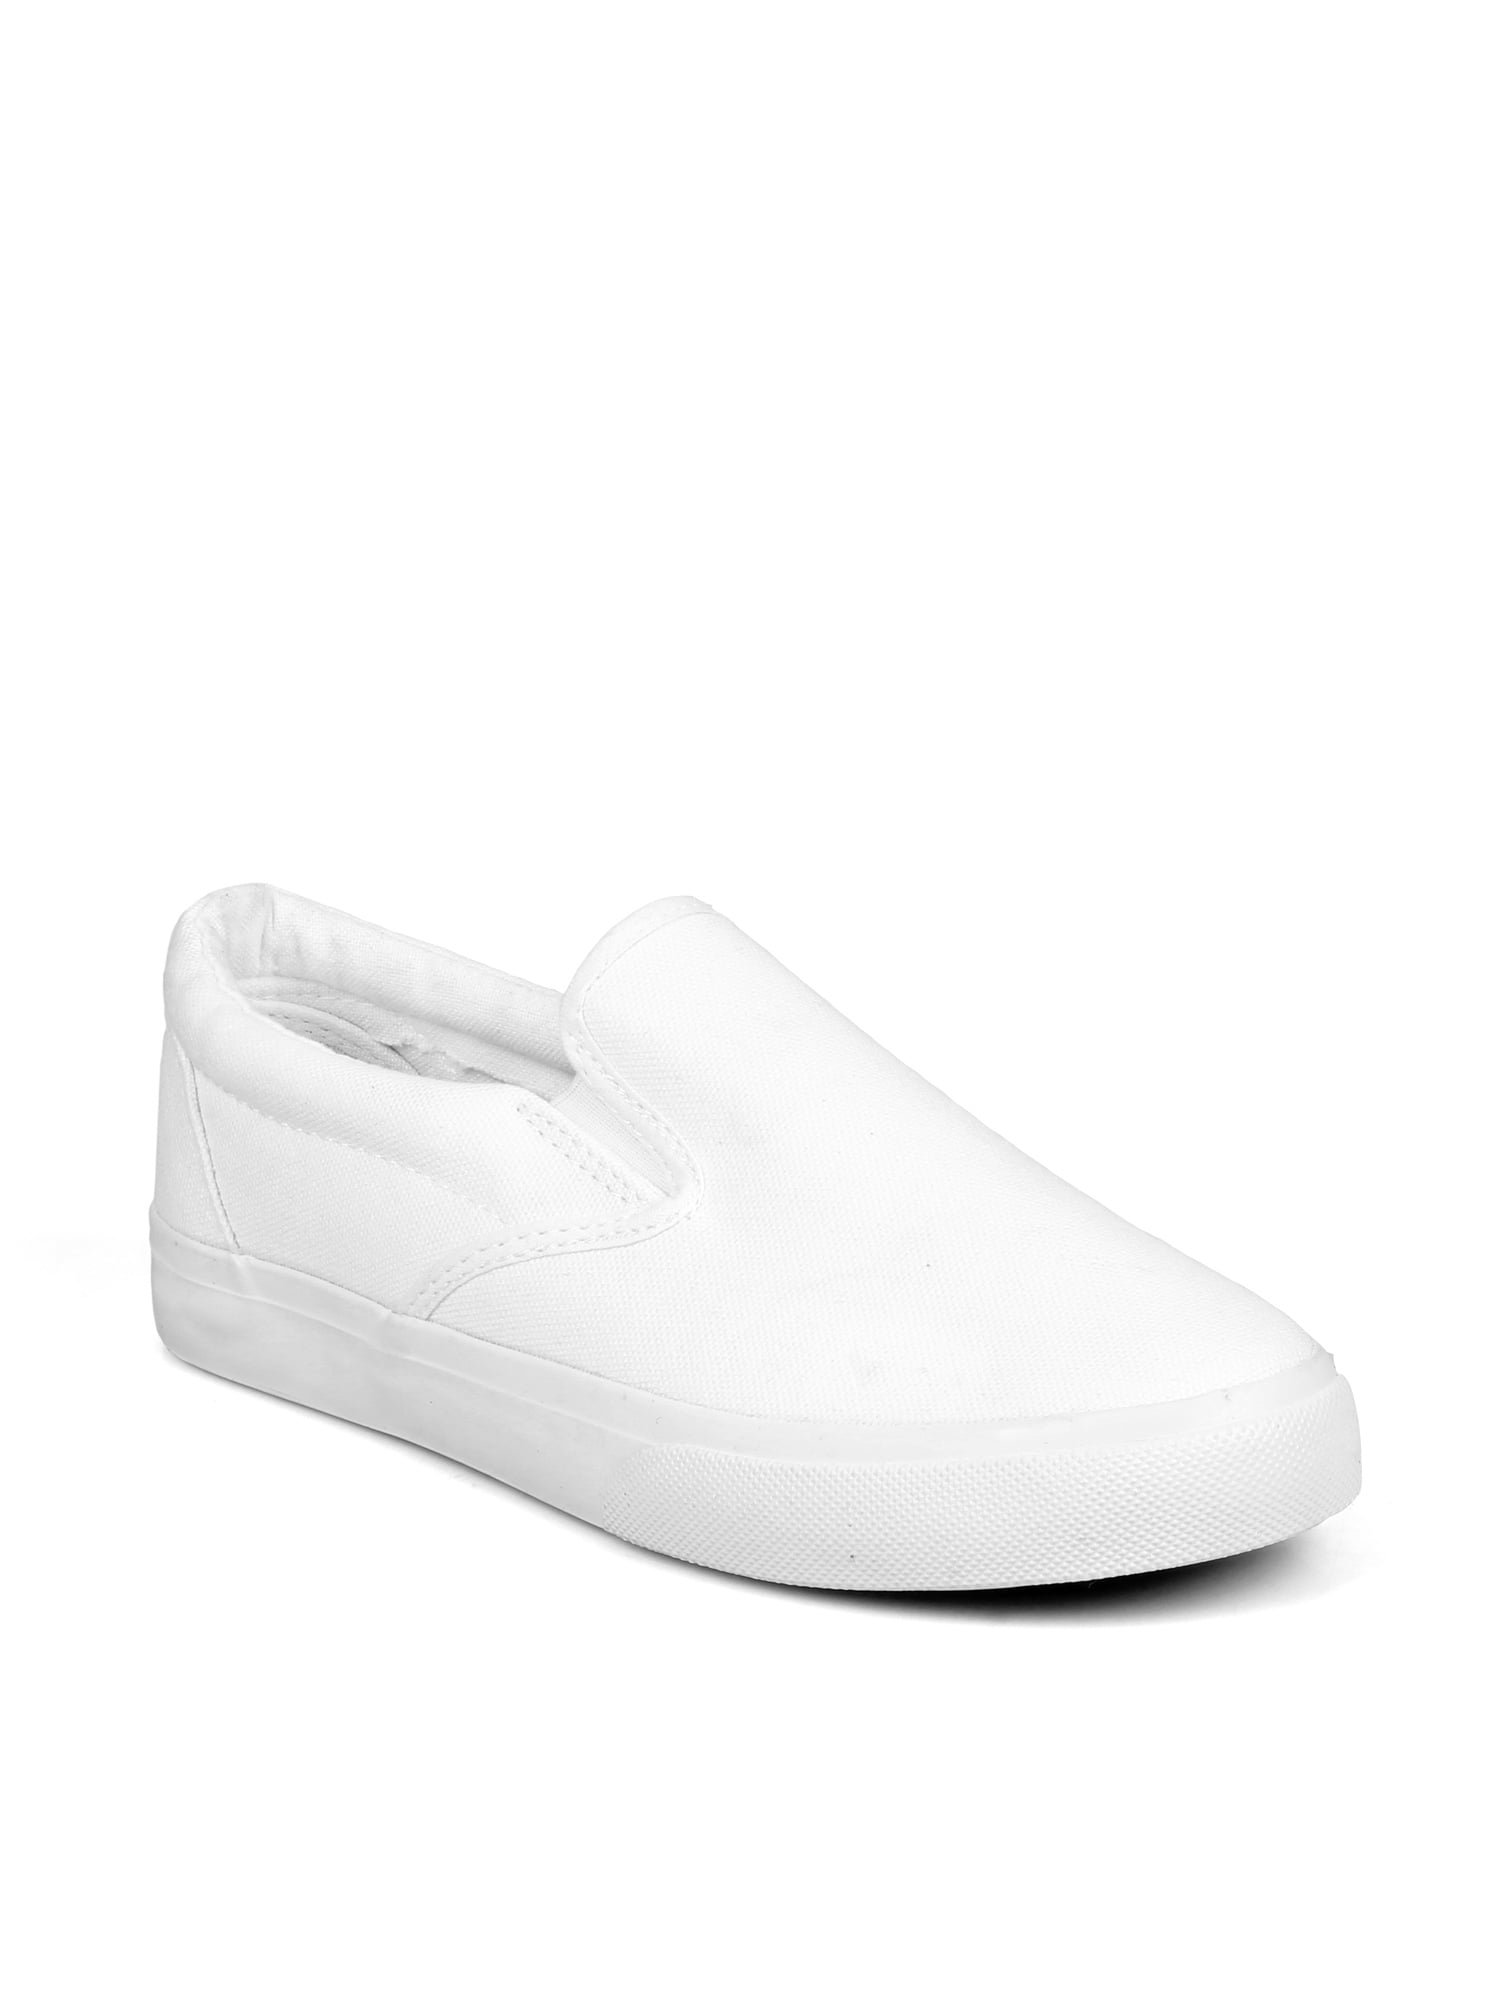 Slip On Women's Canvas Sneakers in White - Walmart.com